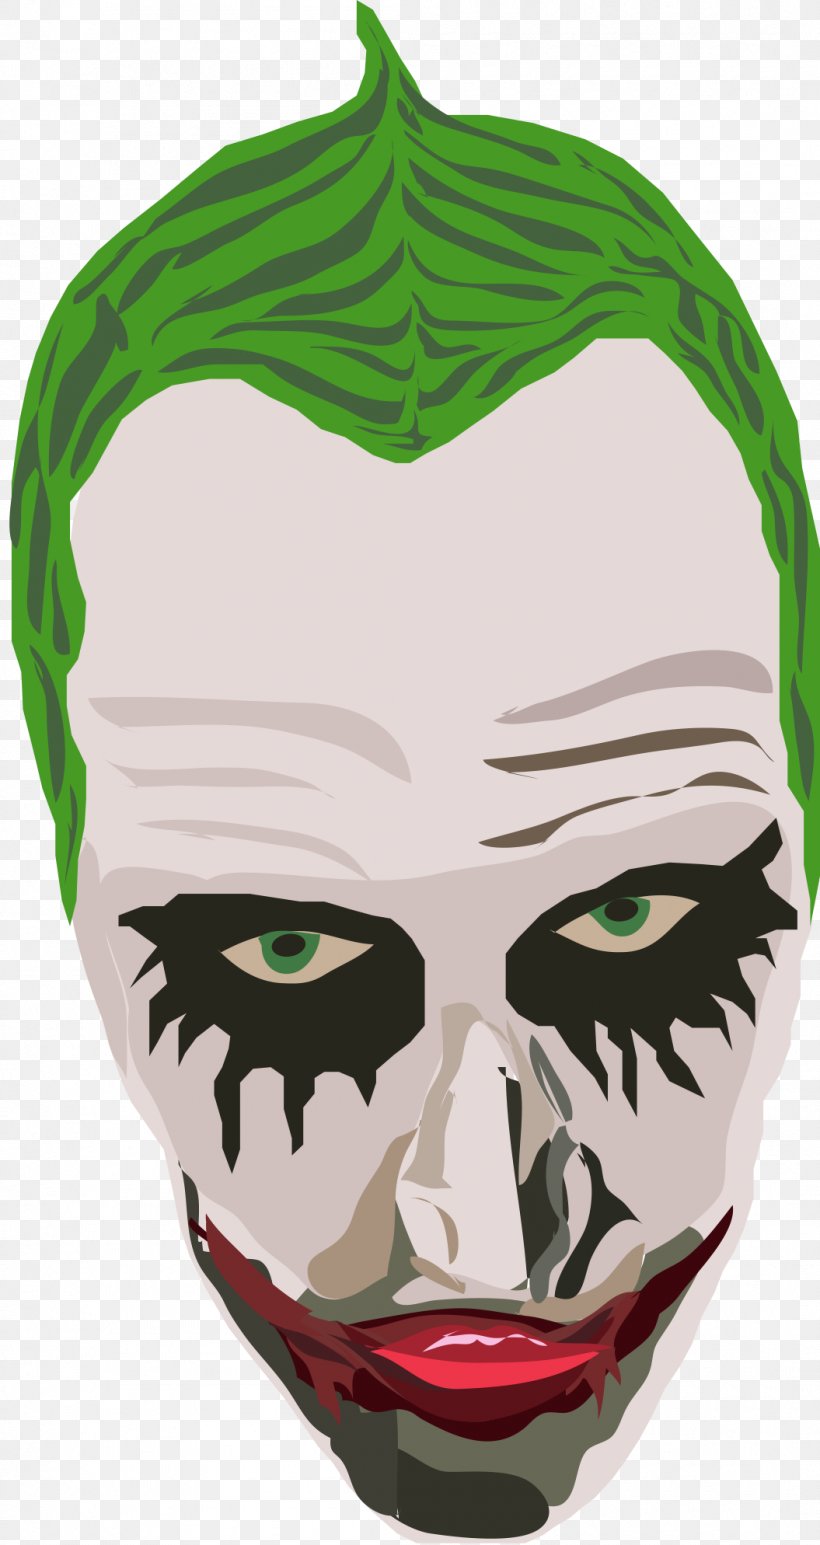 Joker Green Mask Facebook, PNG, 1055x1988px, Joker, Face, Facebook, Fictional Character, Green Download Free